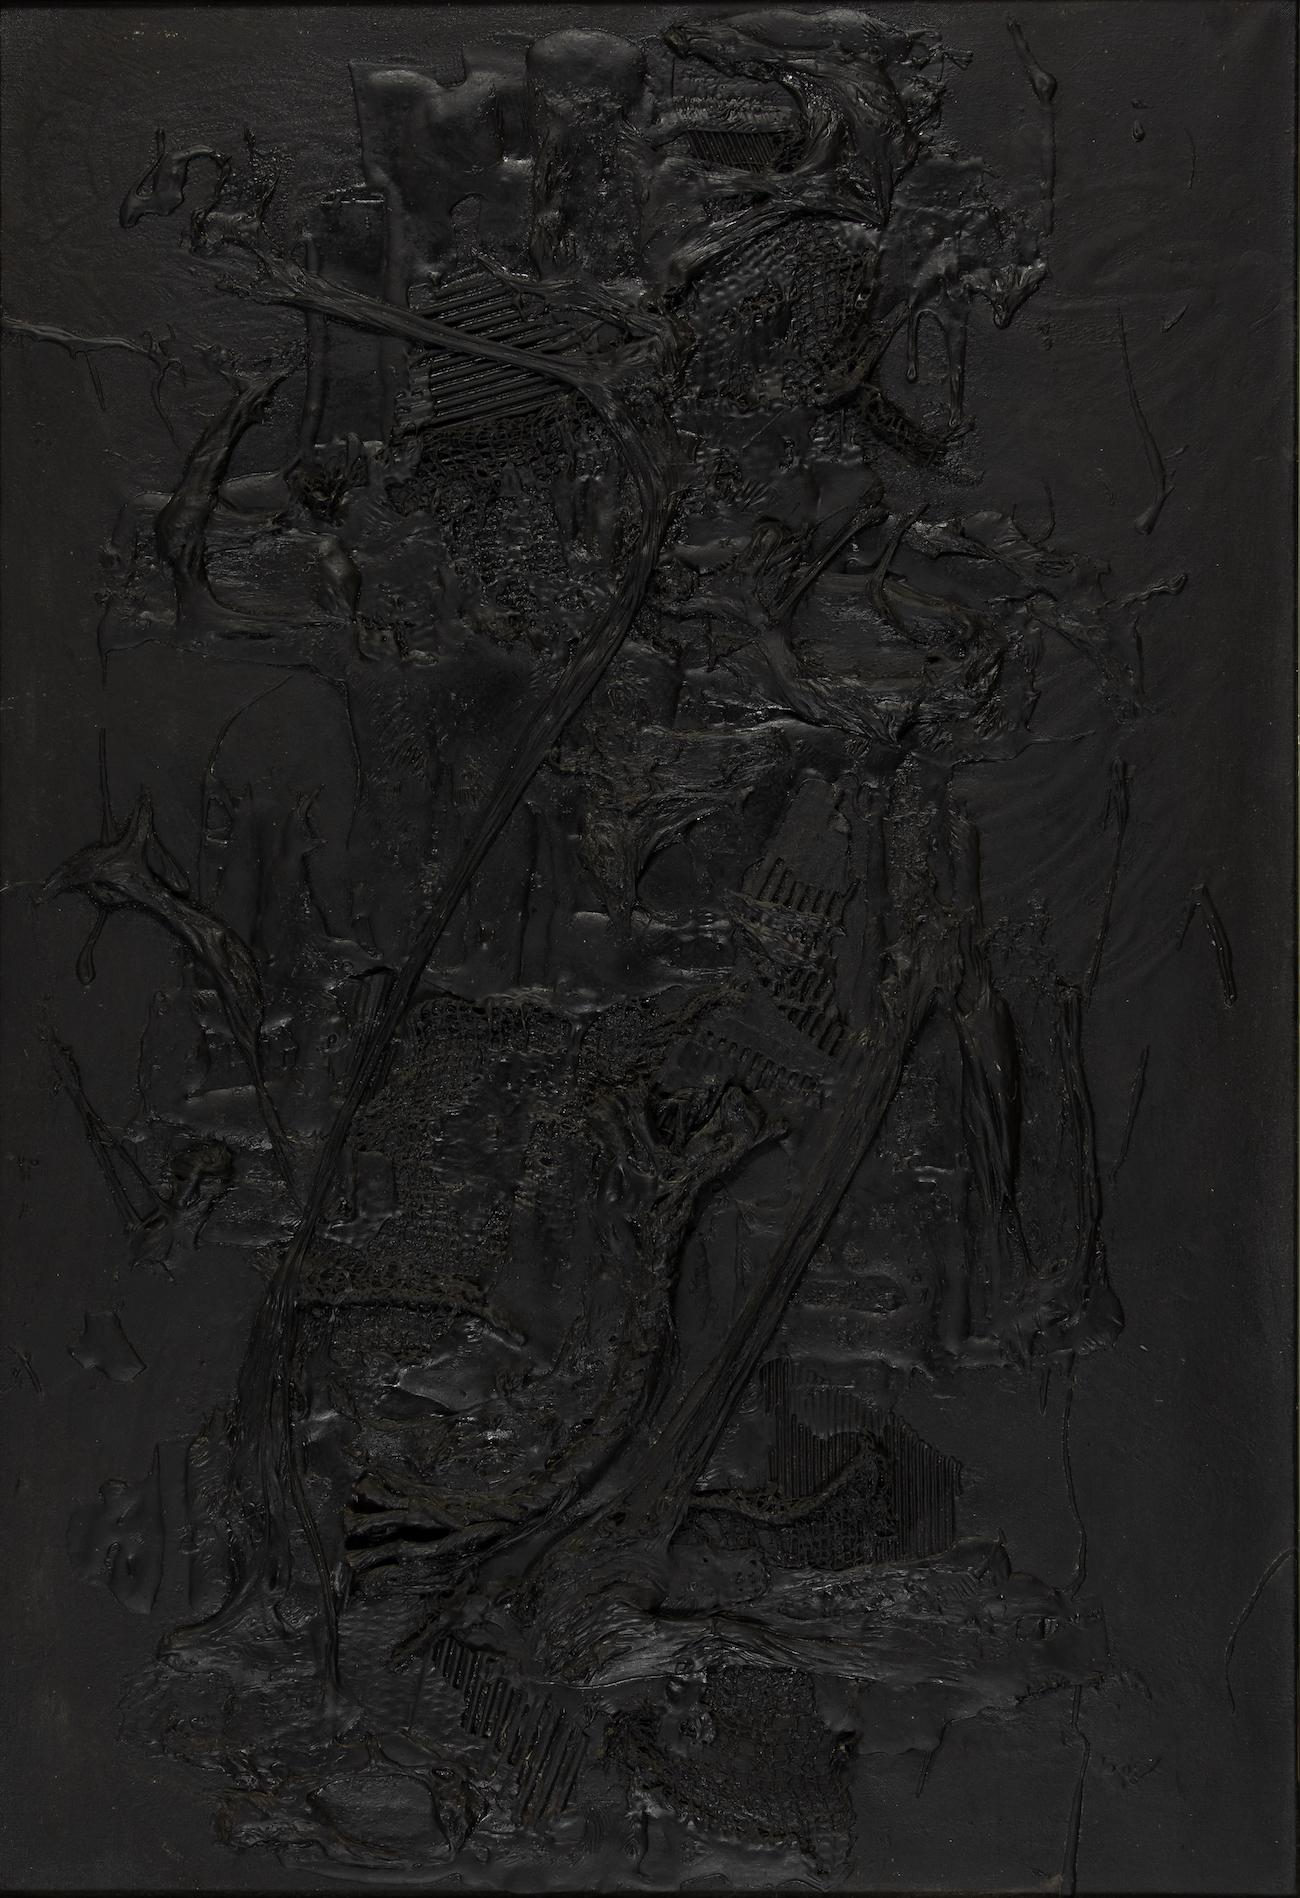 Komposition von Aika Brown (1937-1964)
Gemischte Medien auf Leinwand
130 x 89cm (51 ¹/₈ x 35 Zoll)
Signiert und datiert auf der Rückseite, B. AIKA Paris 1961
1961 hingerichtet
